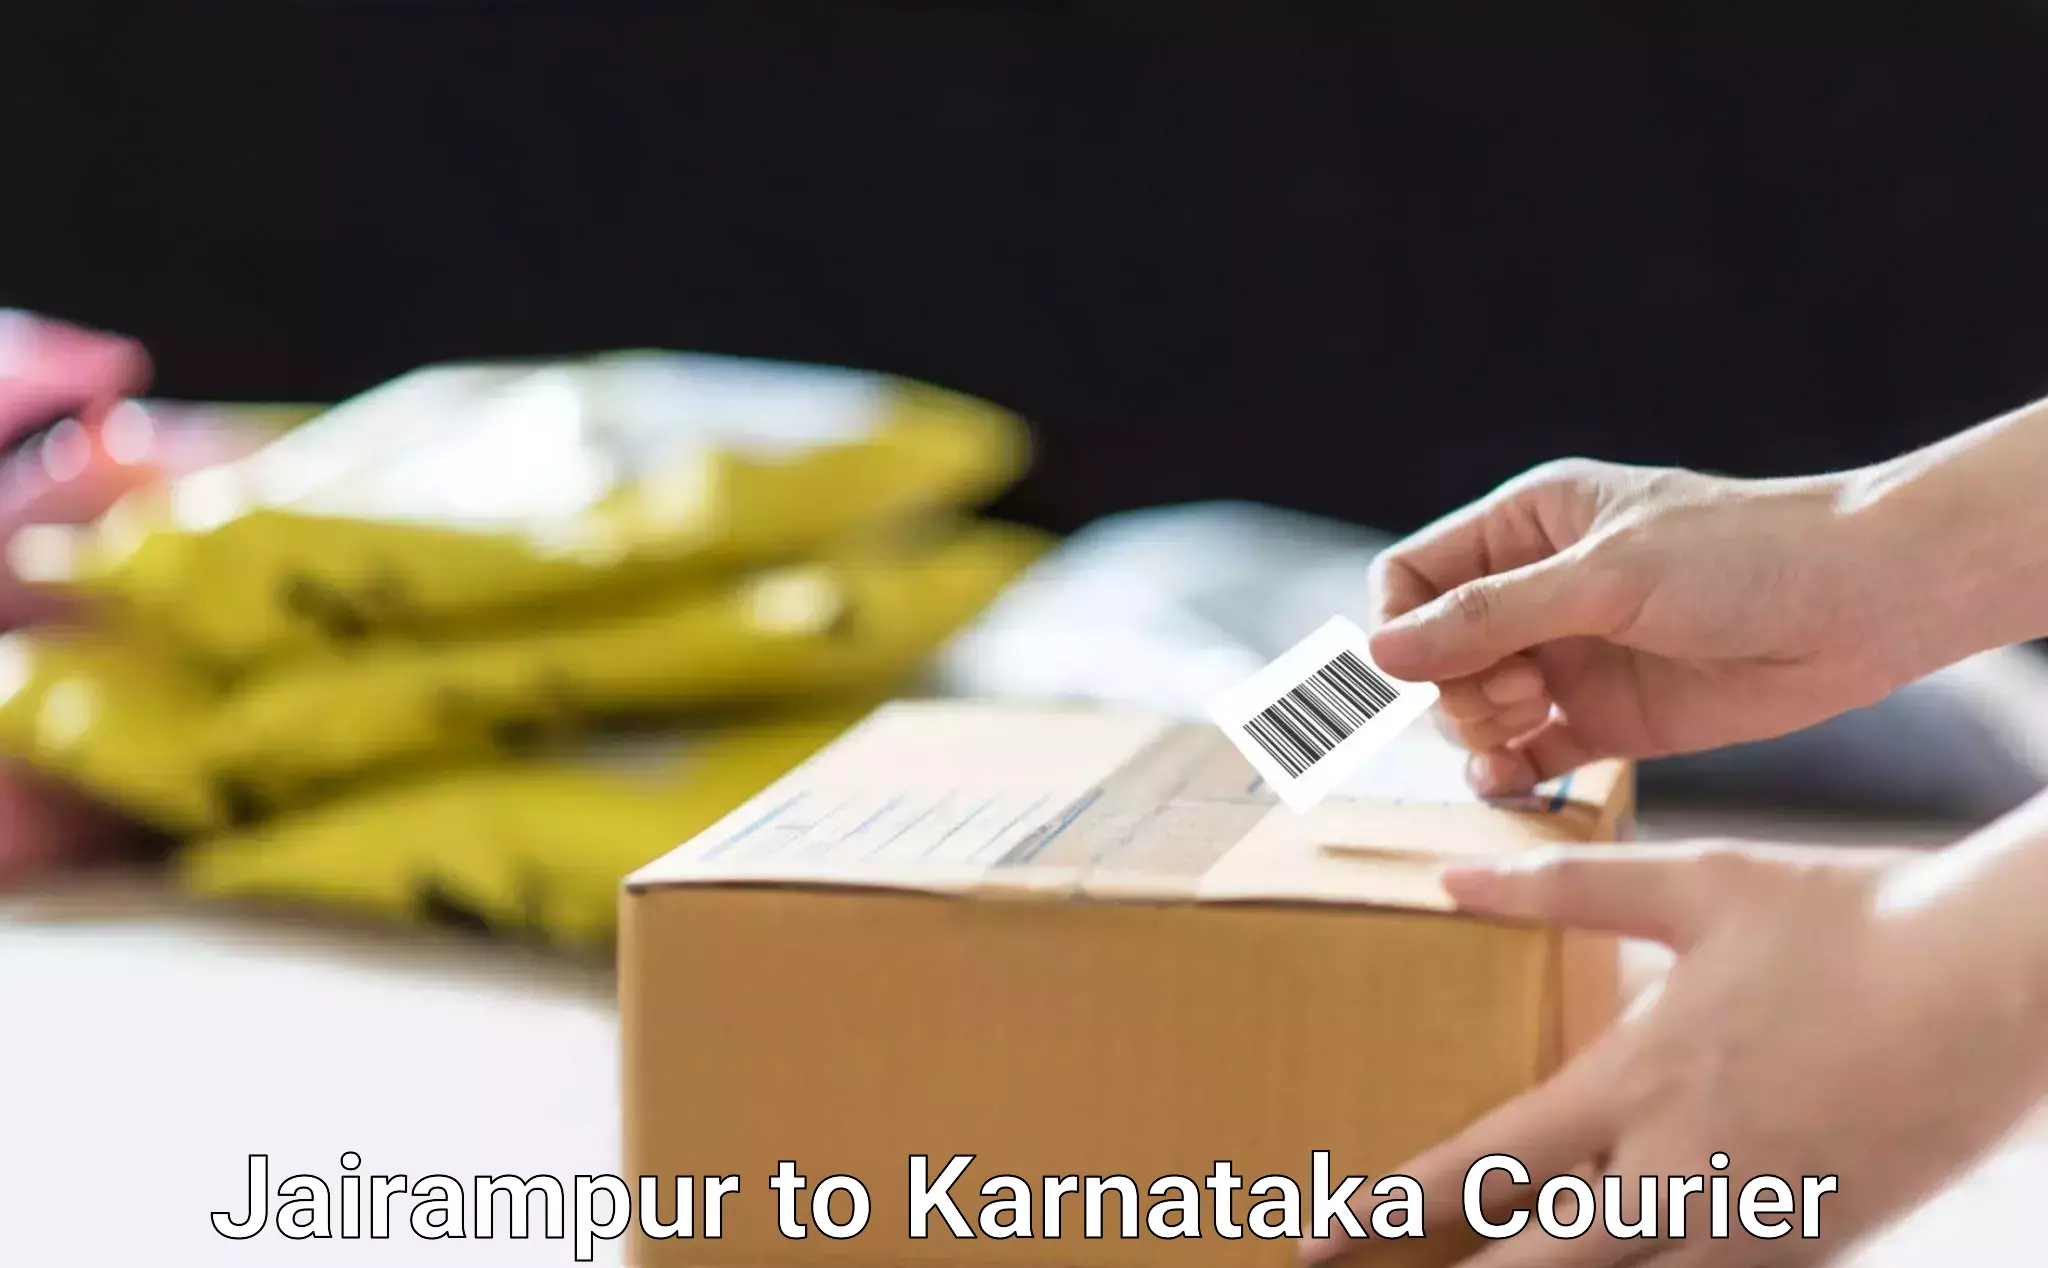 Long distance courier Jairampur to Karnataka